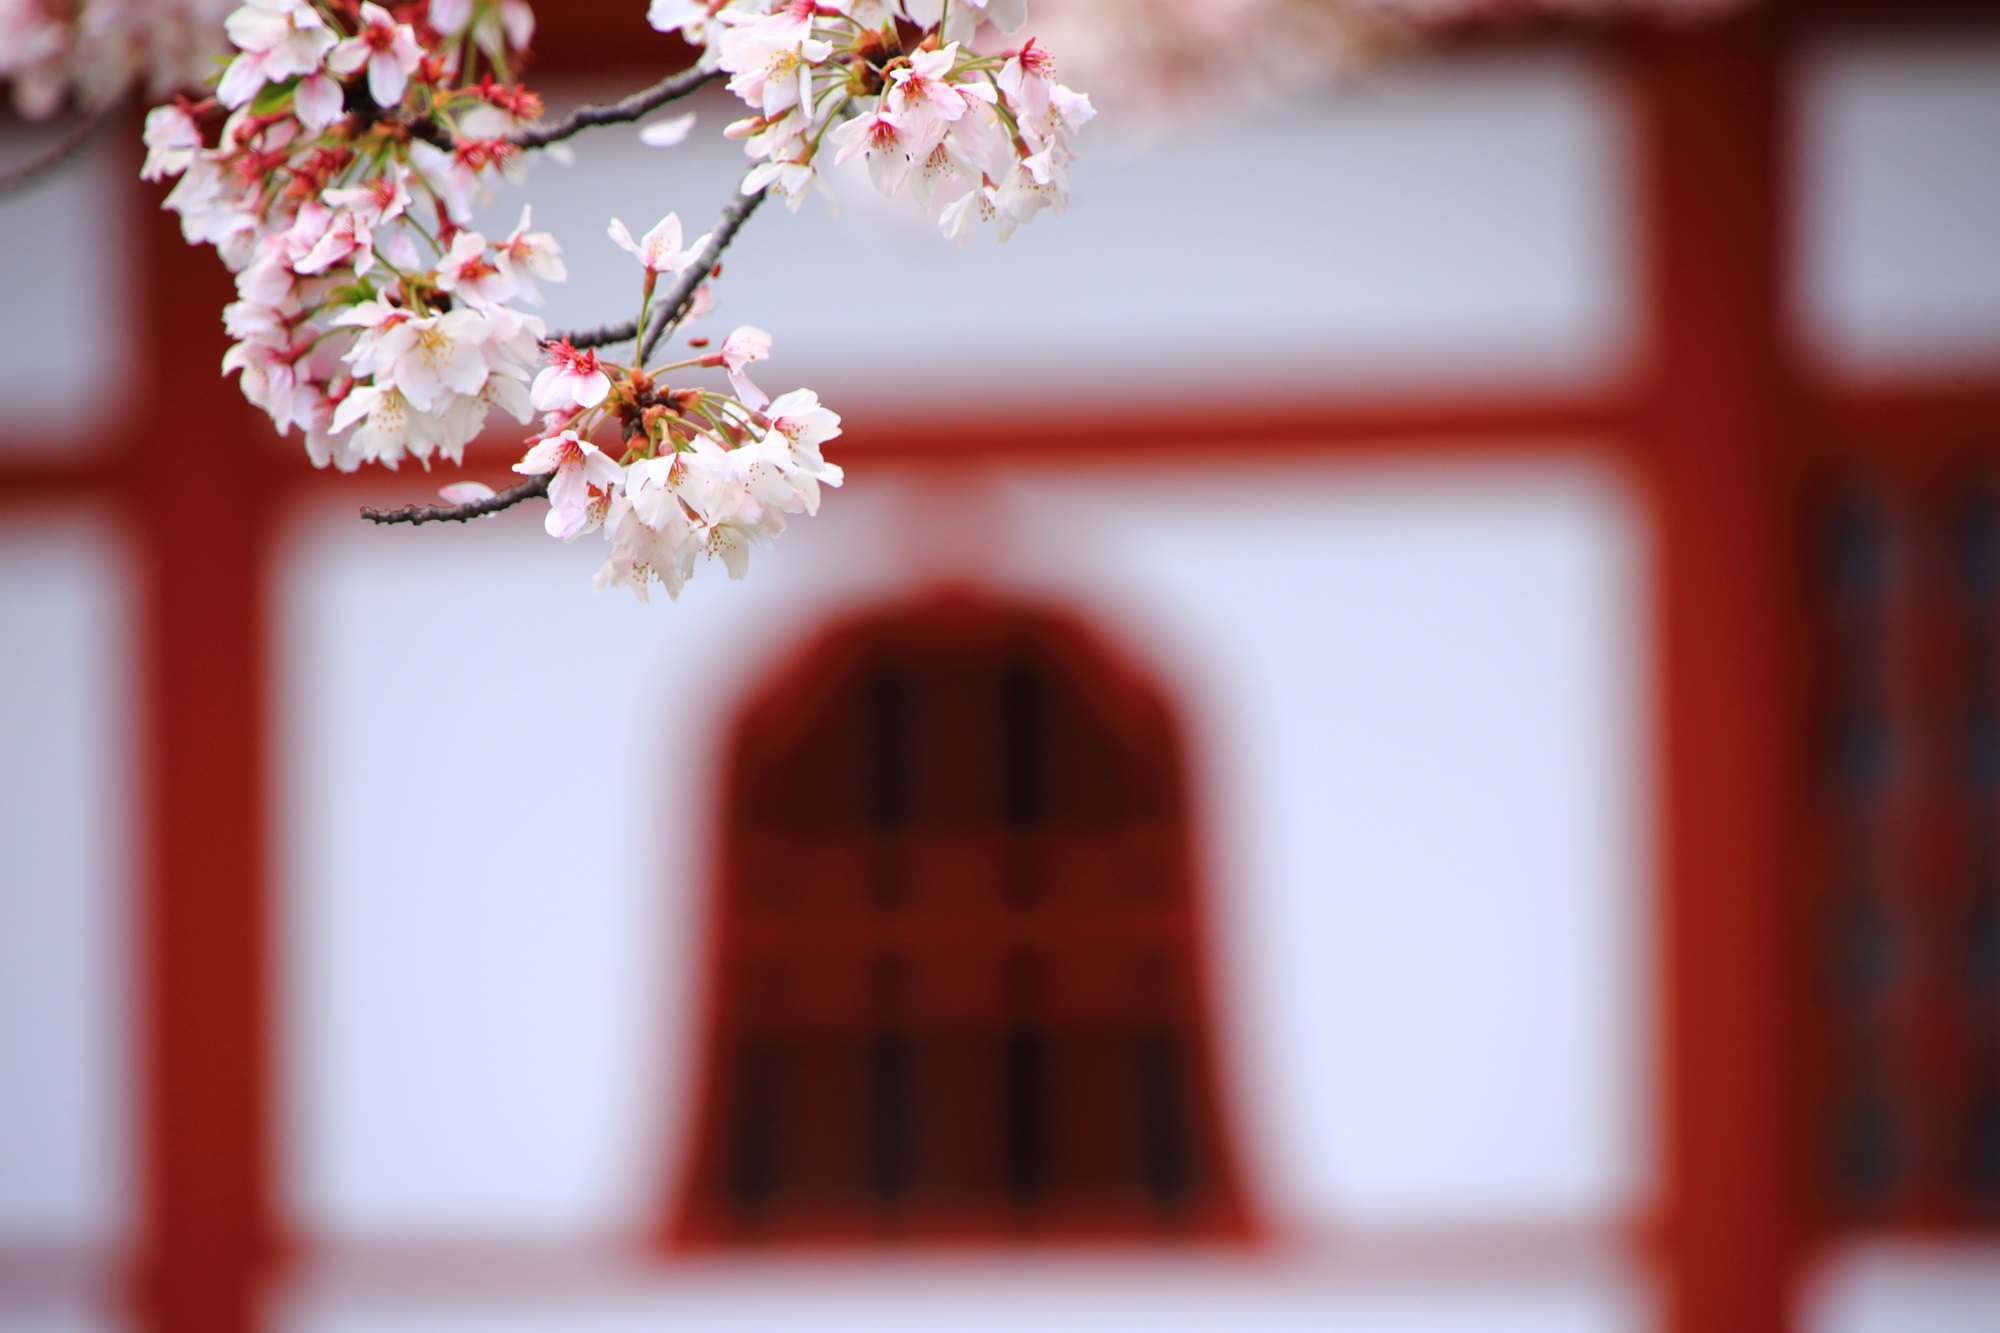 上品な白壁と朱色の柱と窓に映える春色の桜